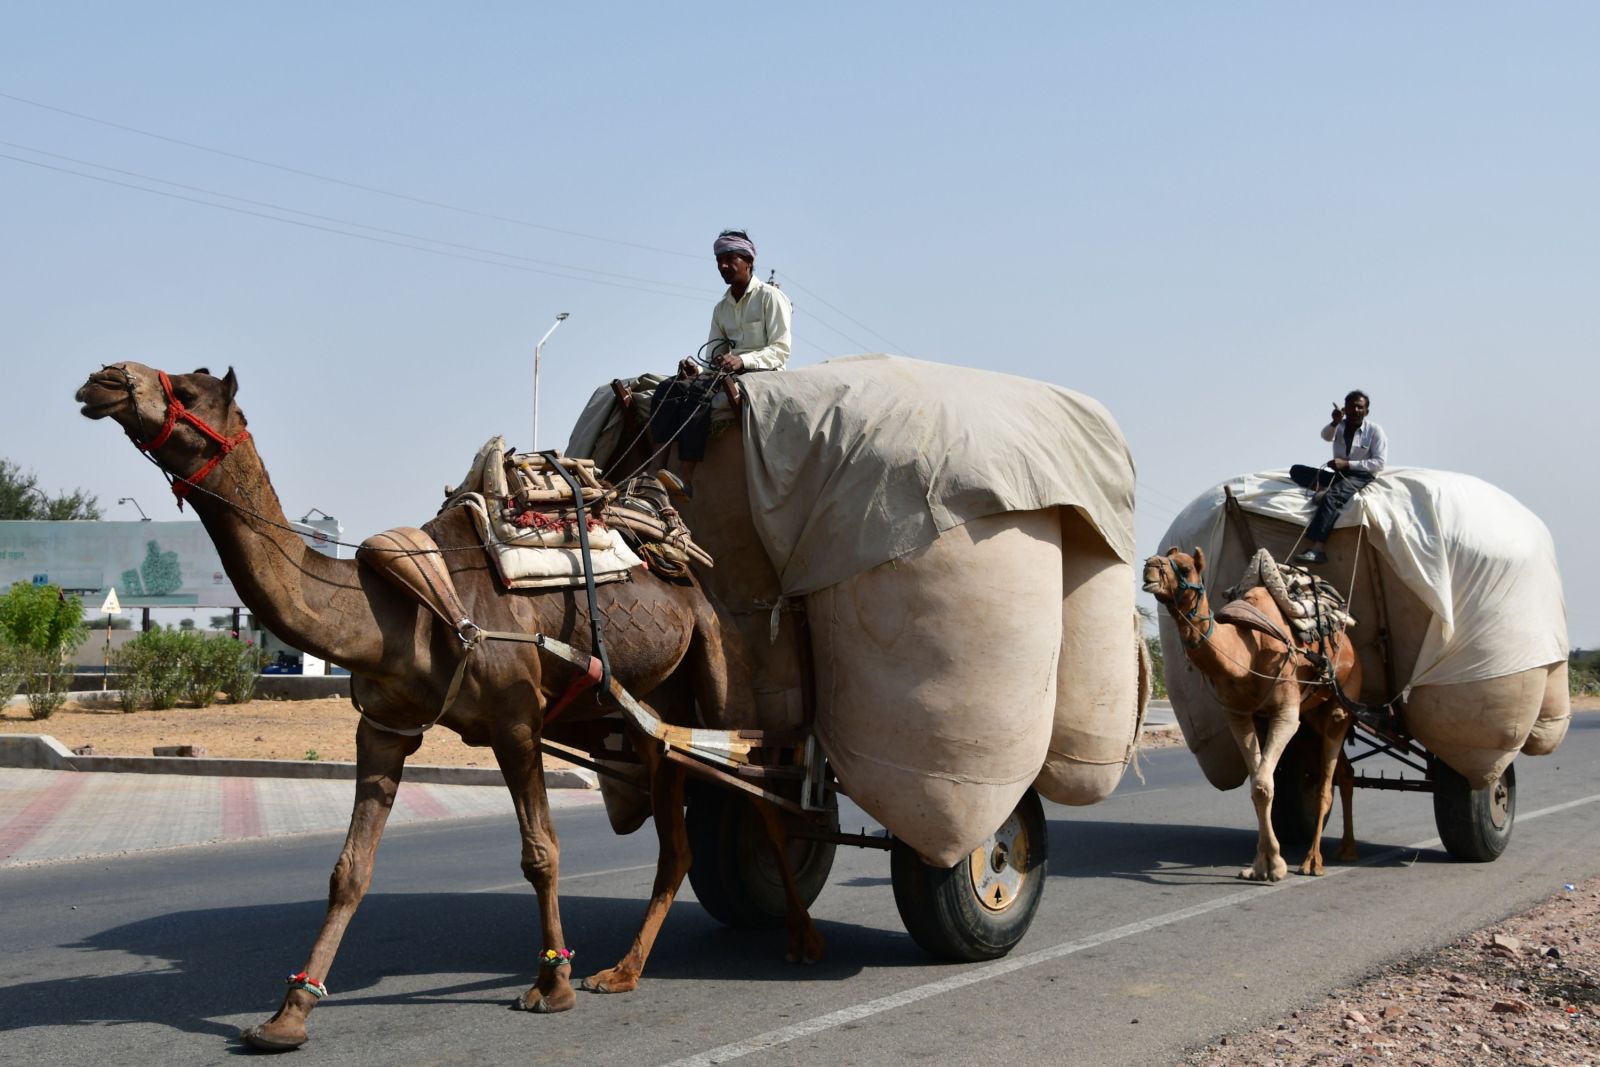 Straßenszene in Indien – Kamel-Lastentier